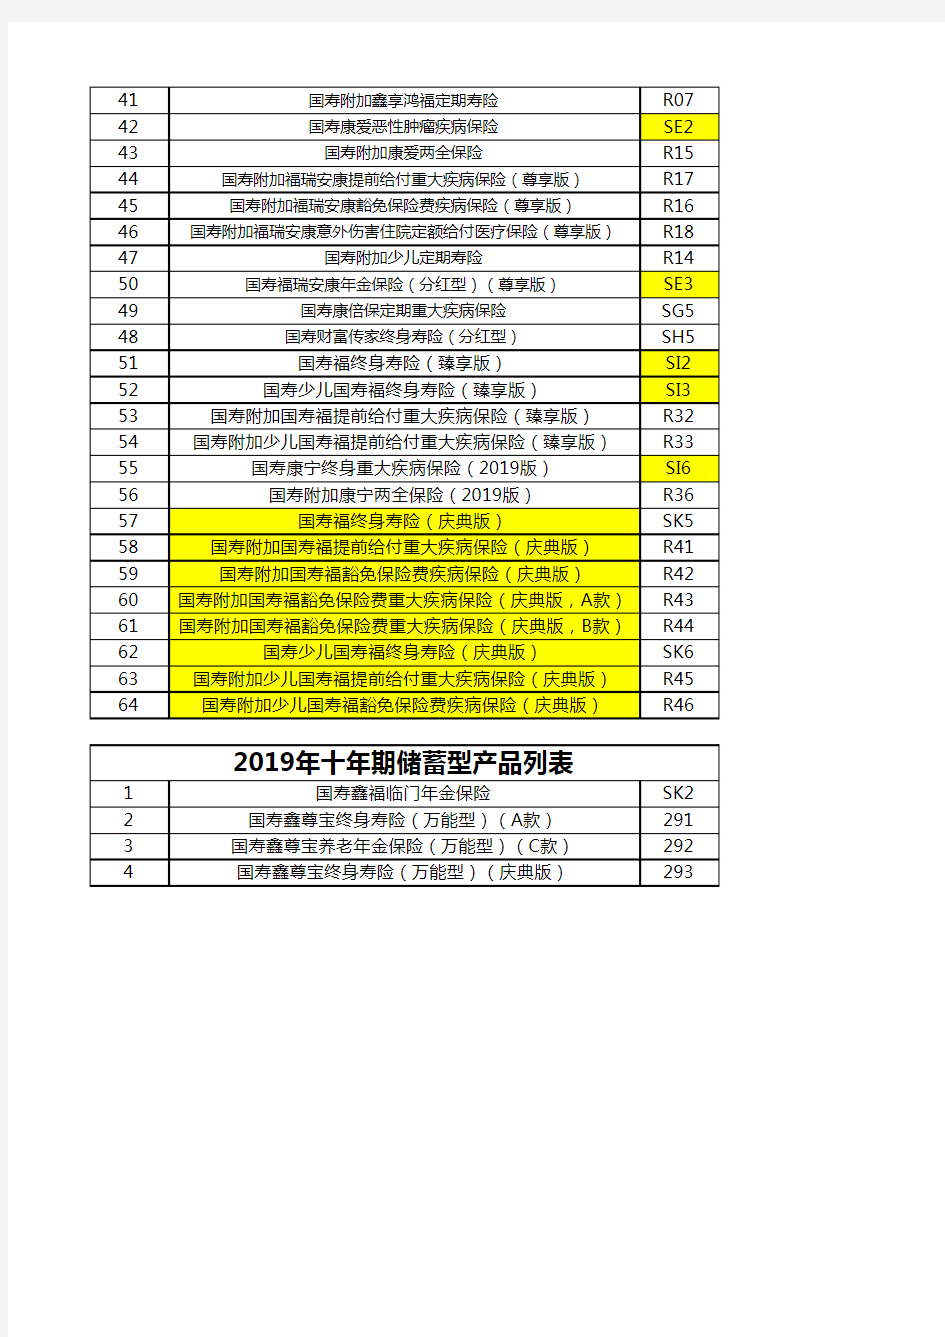 中国人寿2019保障型产品列表